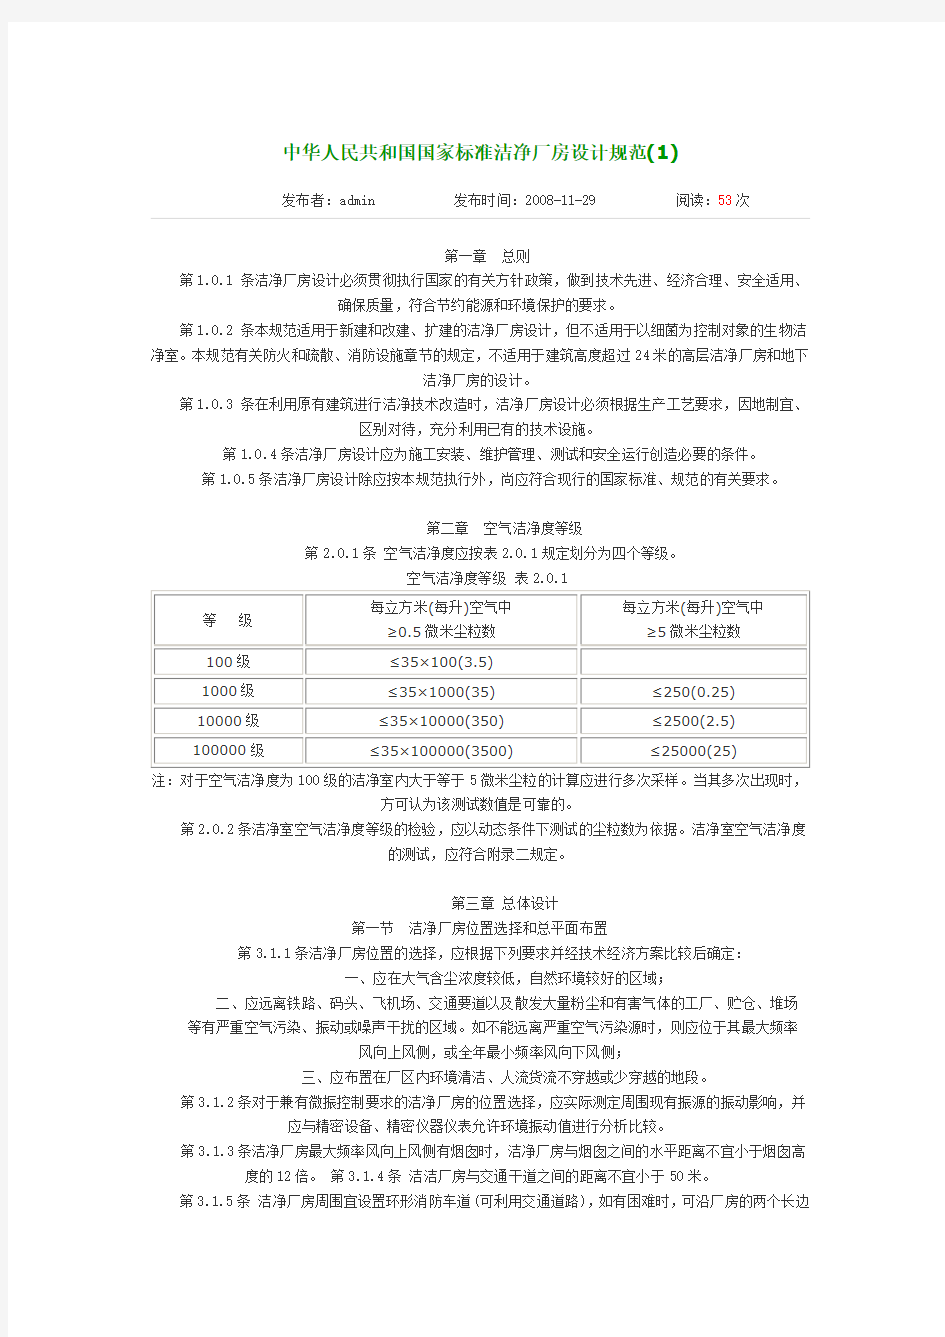 中华人民共和国国家标准洁净厂房设计规范